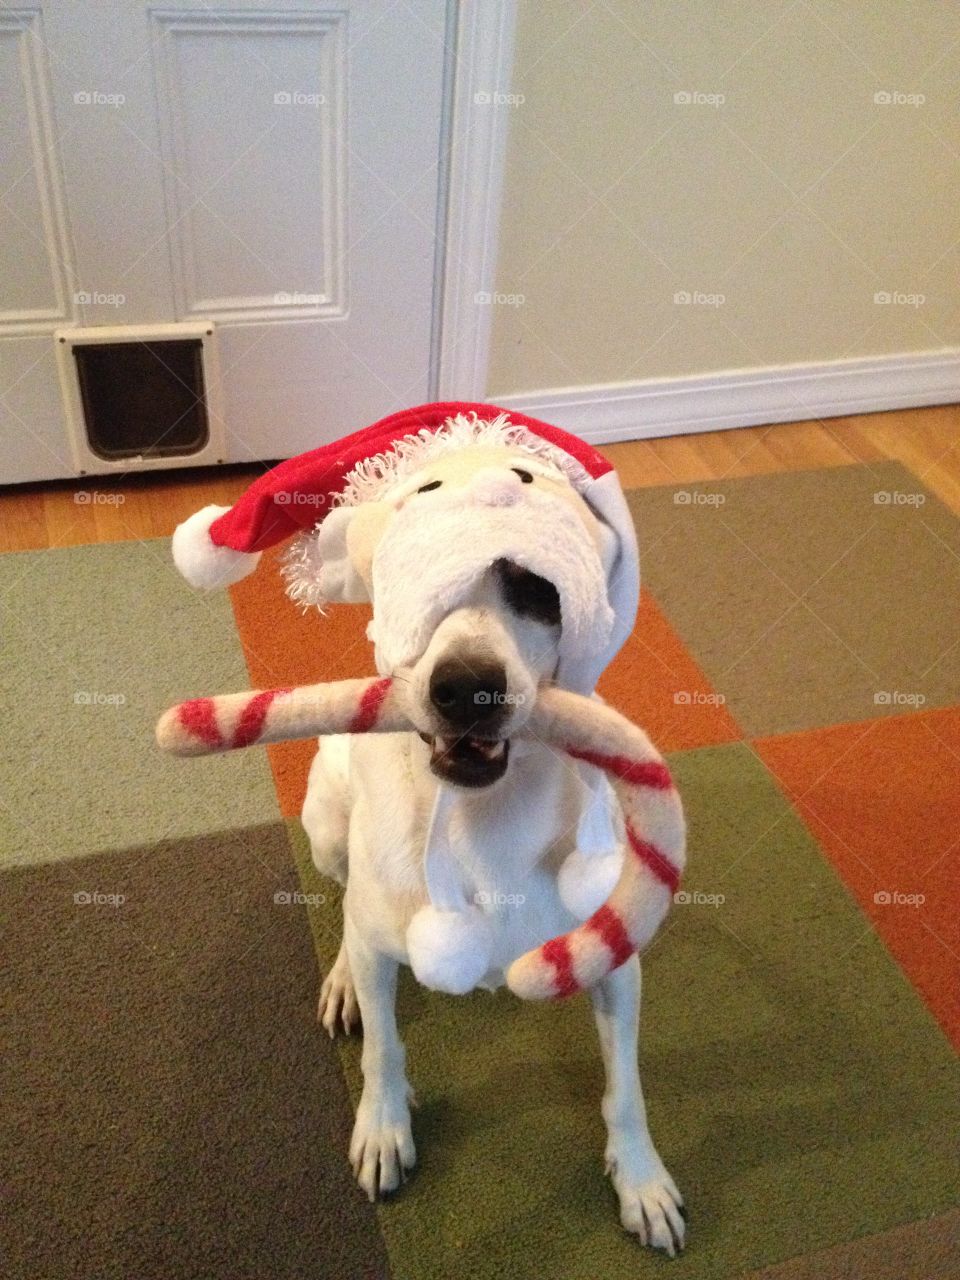 Santa dog. Dog dressed as Santa